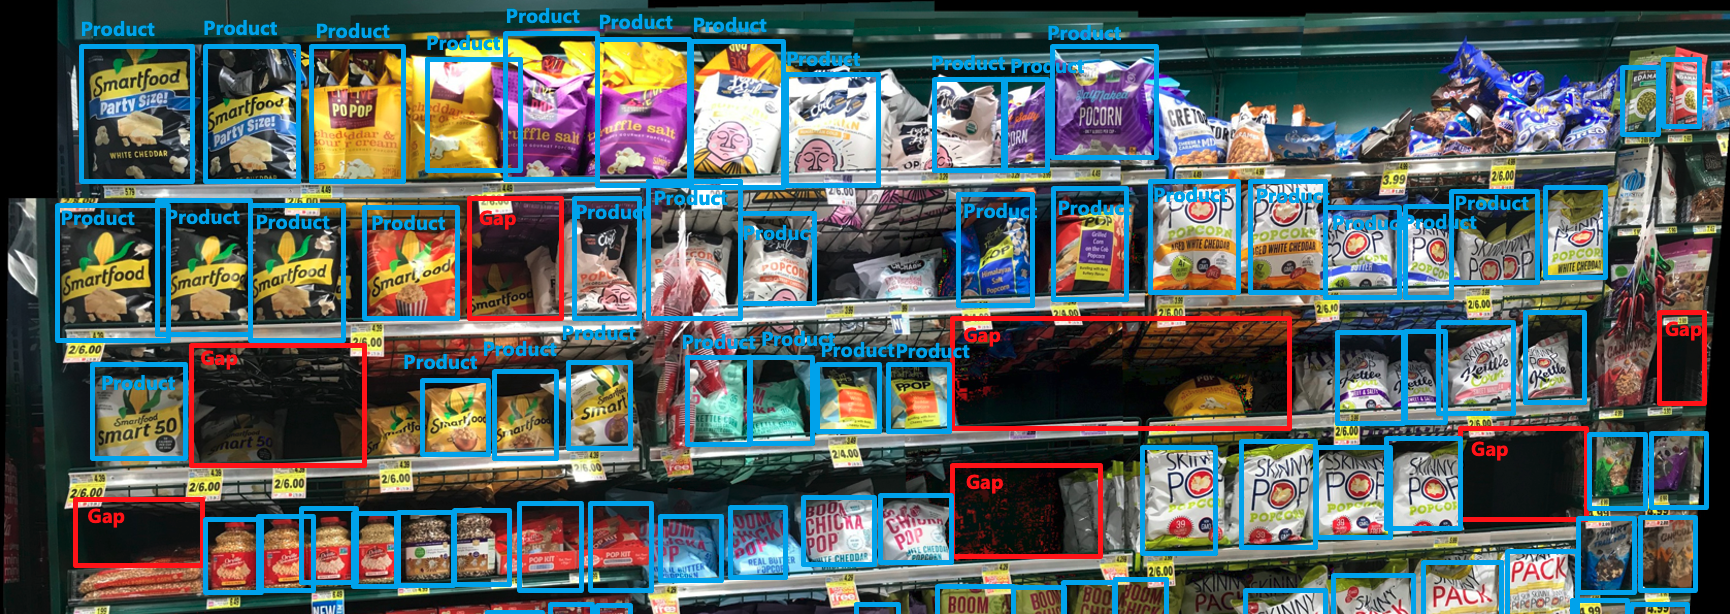 零售货架的照片，其中的产品和空隙用矩形突出显示。